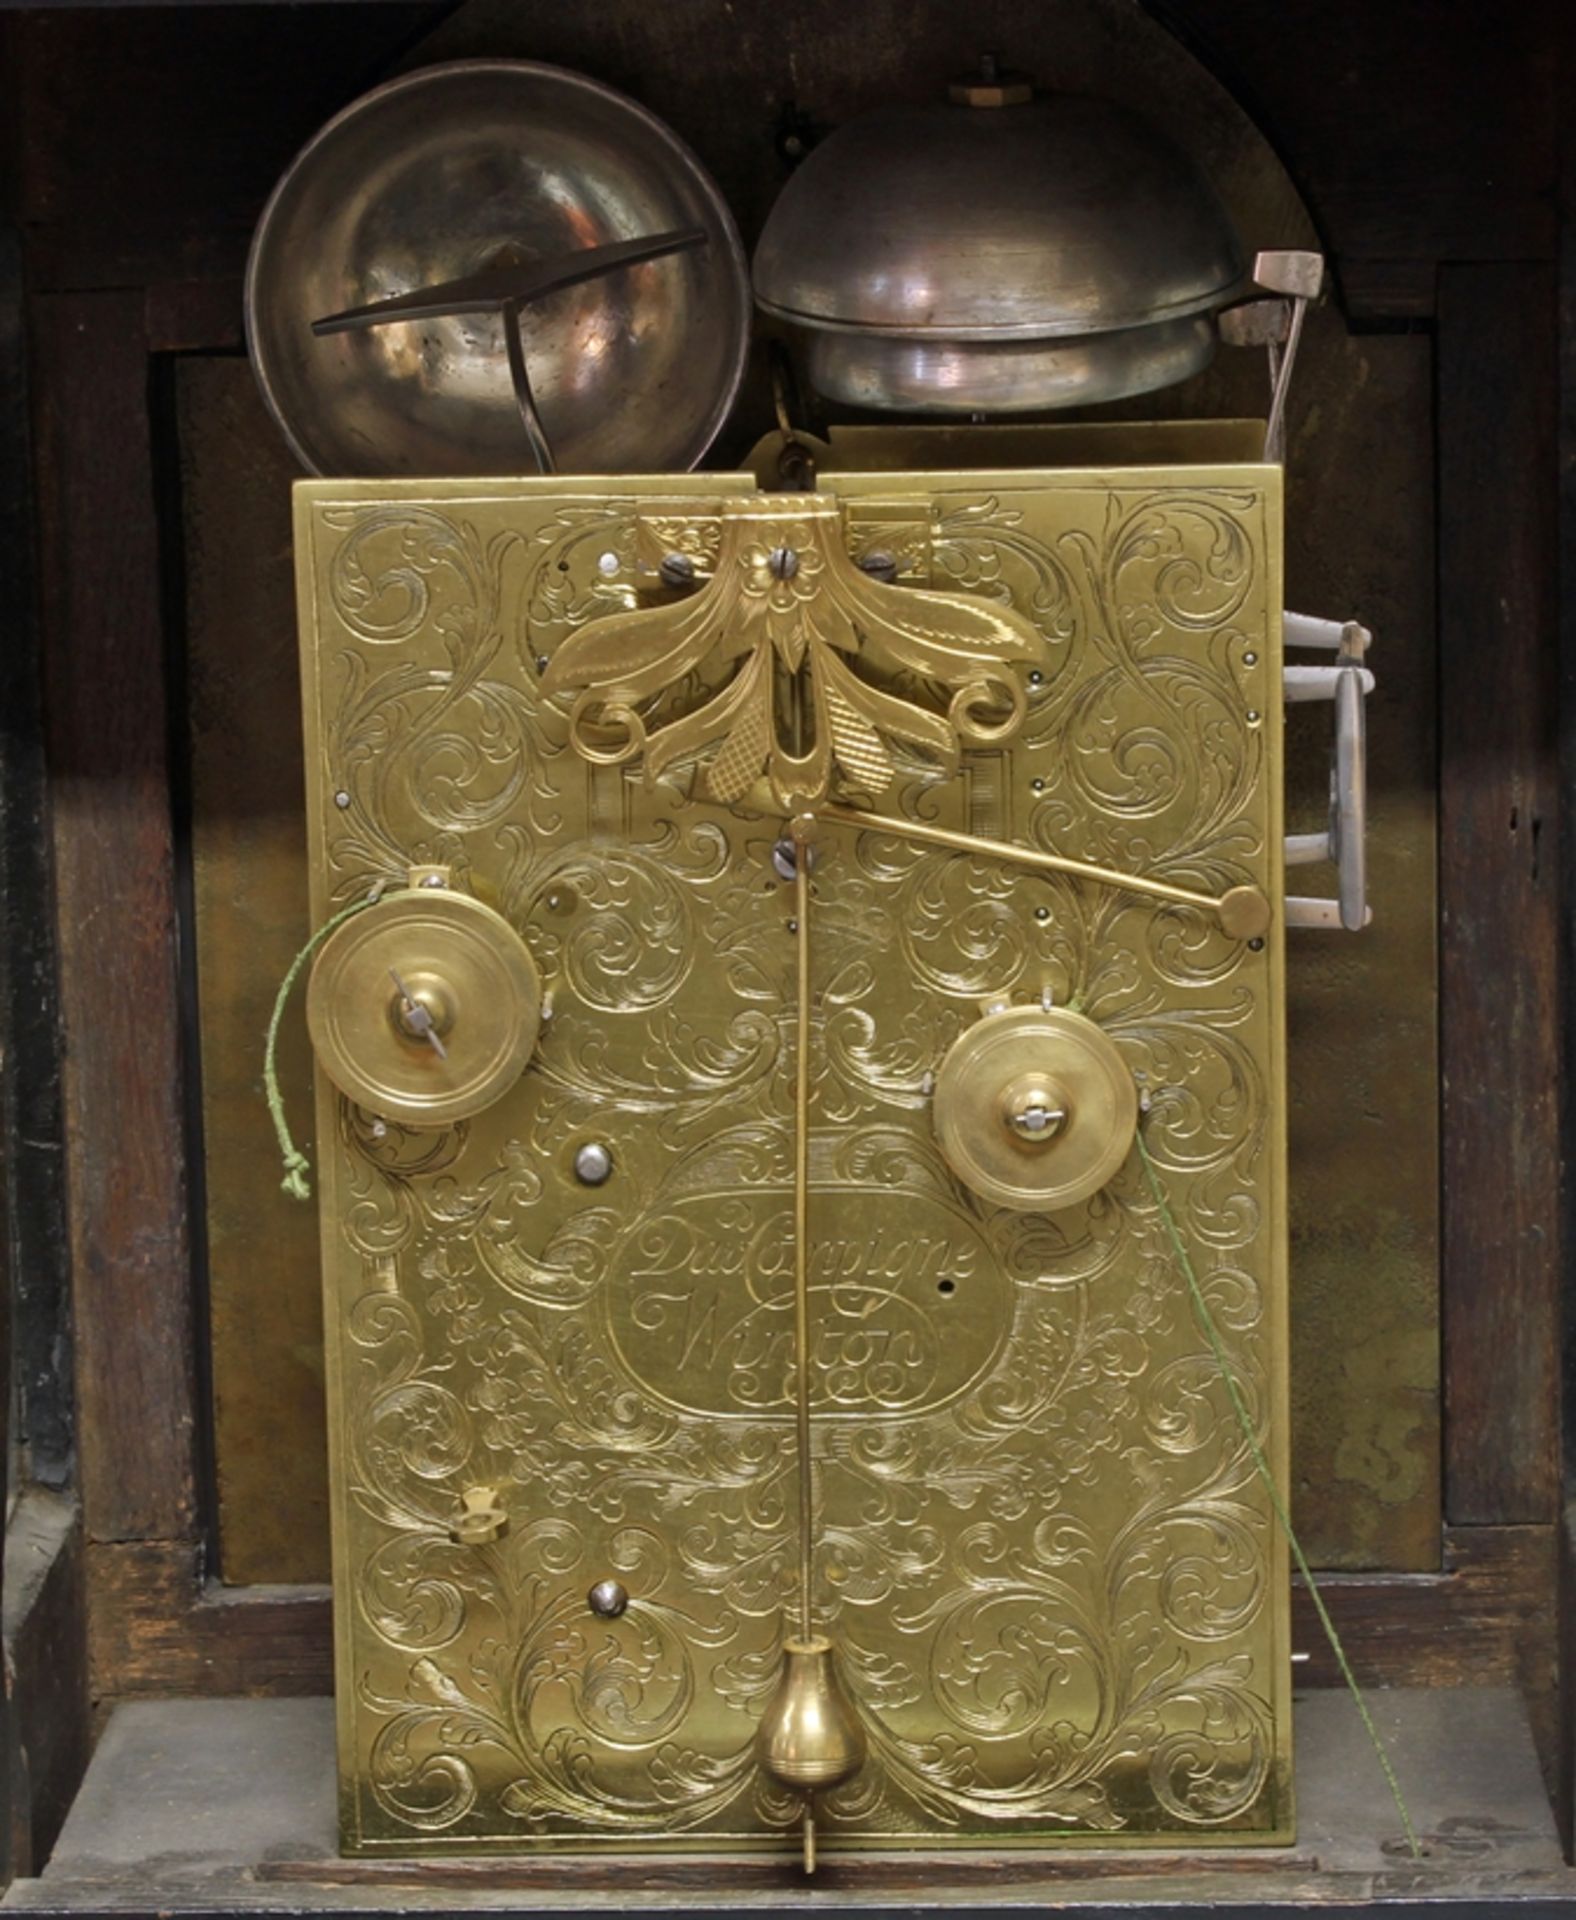 Bracket Clock, England, Mitte 18. Jh., Plakette im Bogenfeld und Werk, signiert Dav.Compigne, Winto - Image 4 of 4